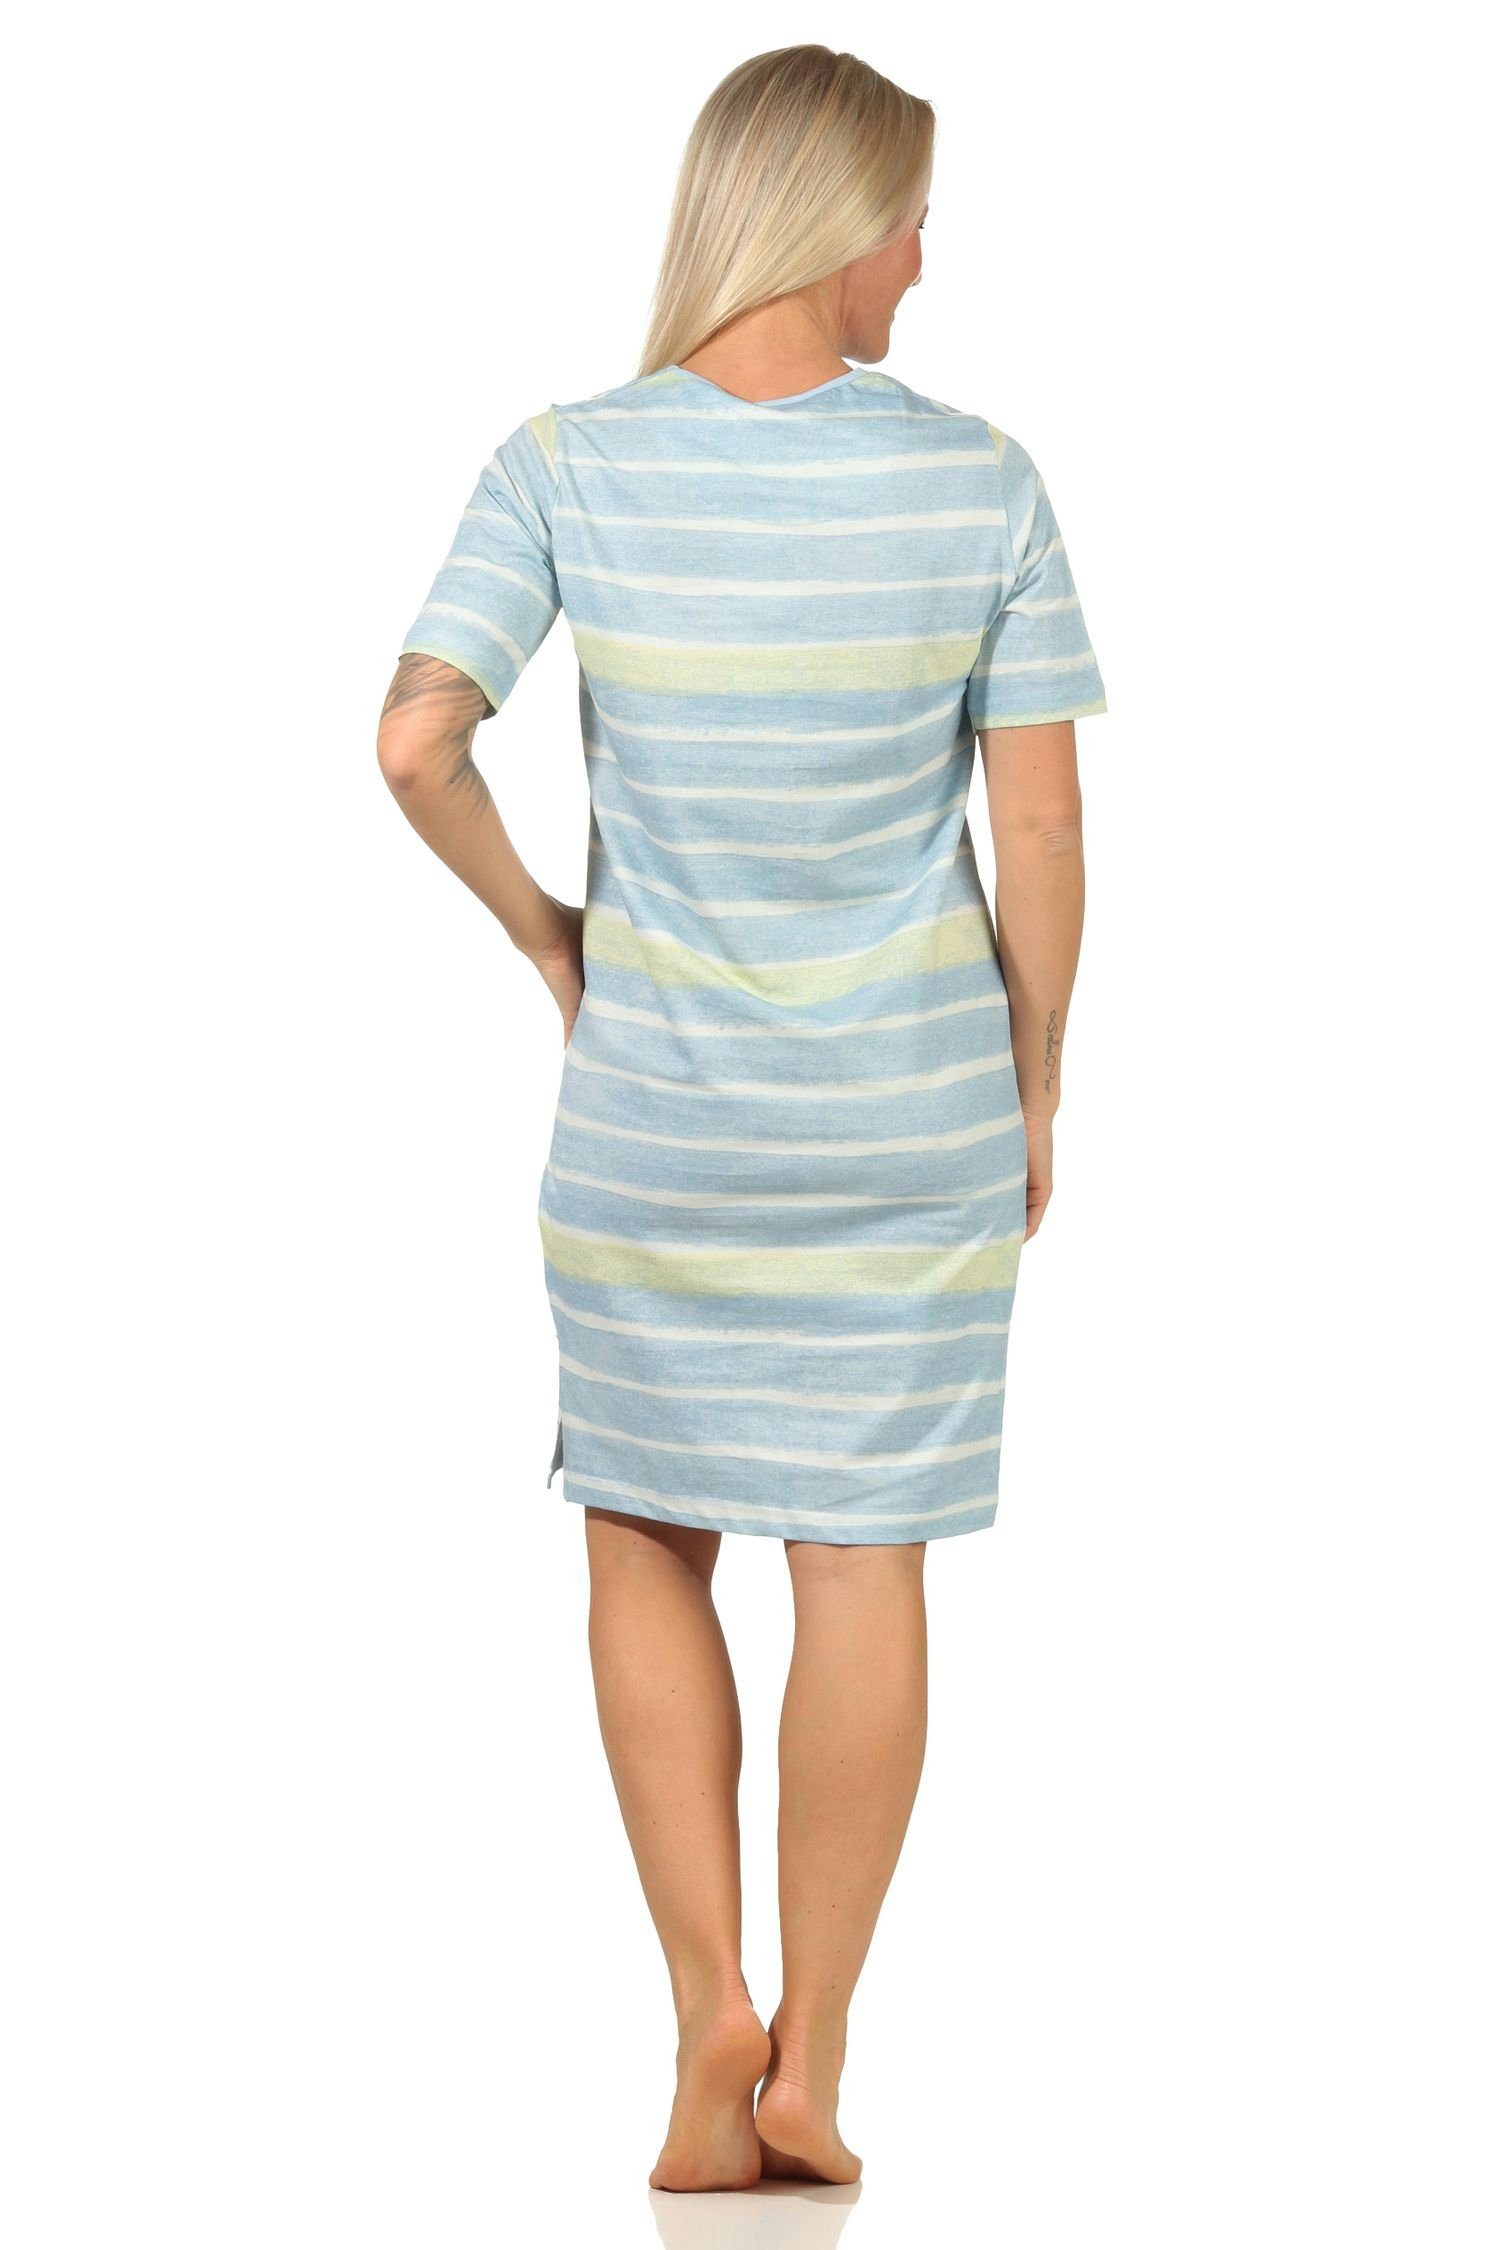 464 112 Nachthemd – Normann hellblau kurzarm Look im Streifen Damen farbenfrohen Nachthemd